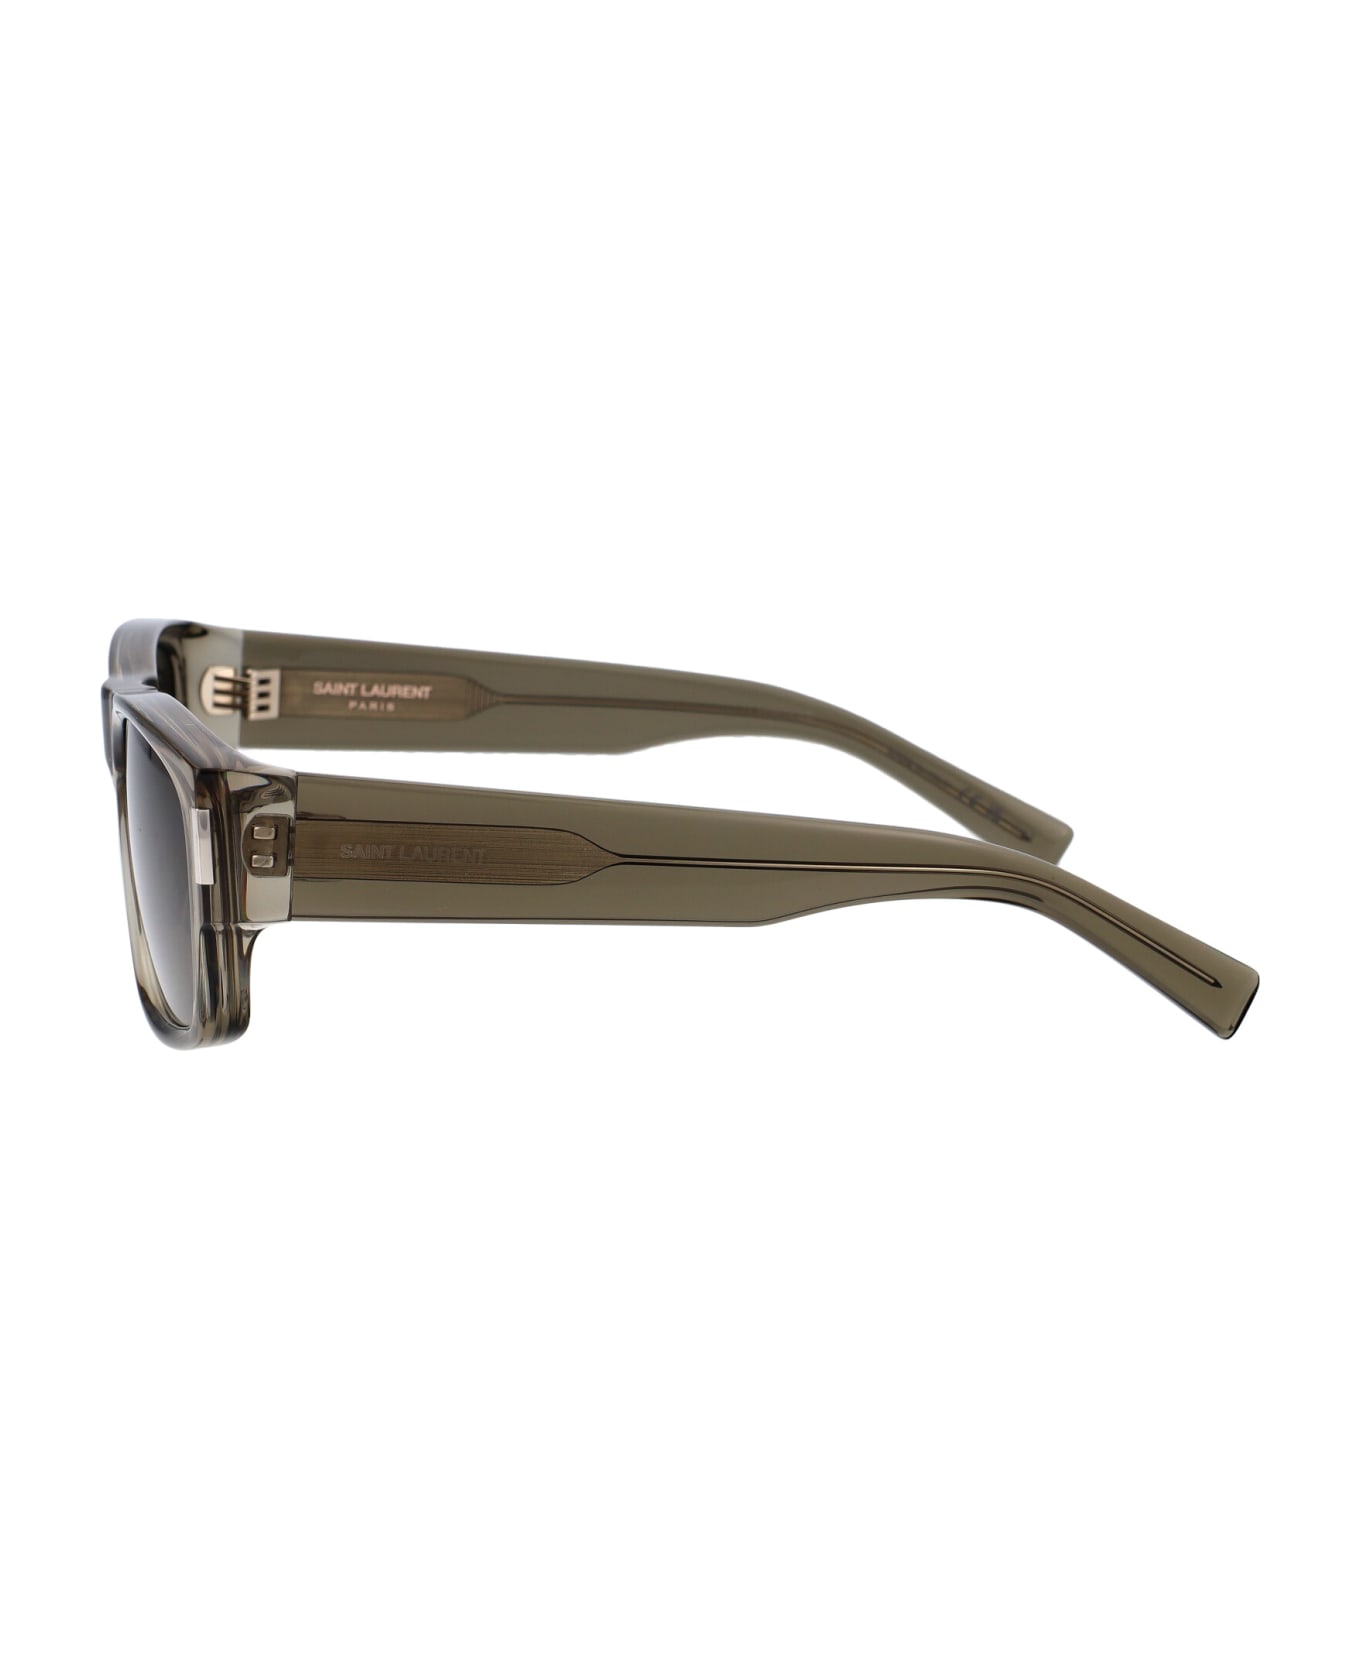 Saint Laurent Eyewear Sl 689 Sunglasses - 004 BROWN BROWN GREY